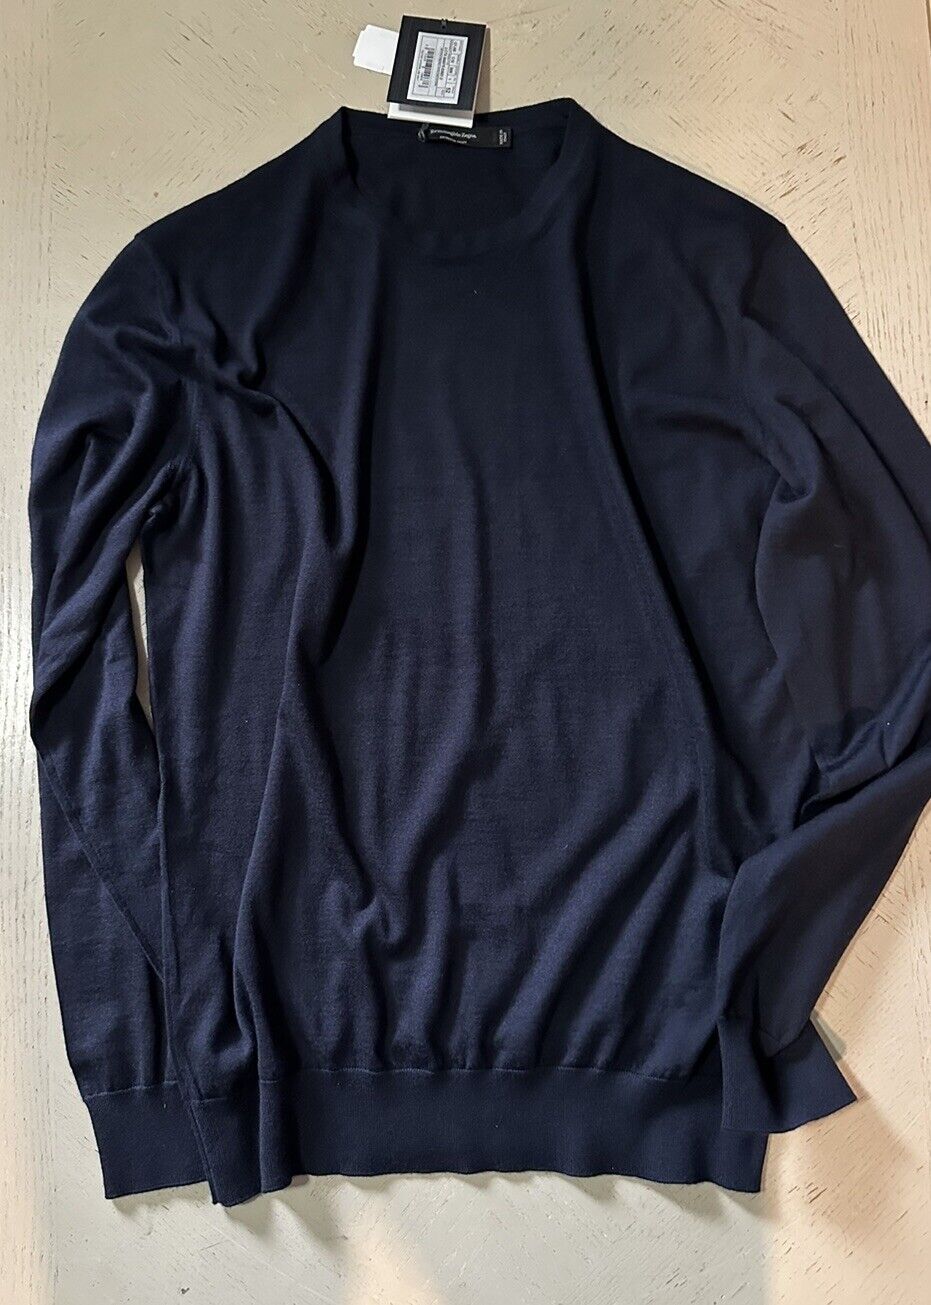 NWT $1195 Ermenegildo Zegna Cashmere/Silk Crewneck Sweater Navy 52 Eu/L Italy